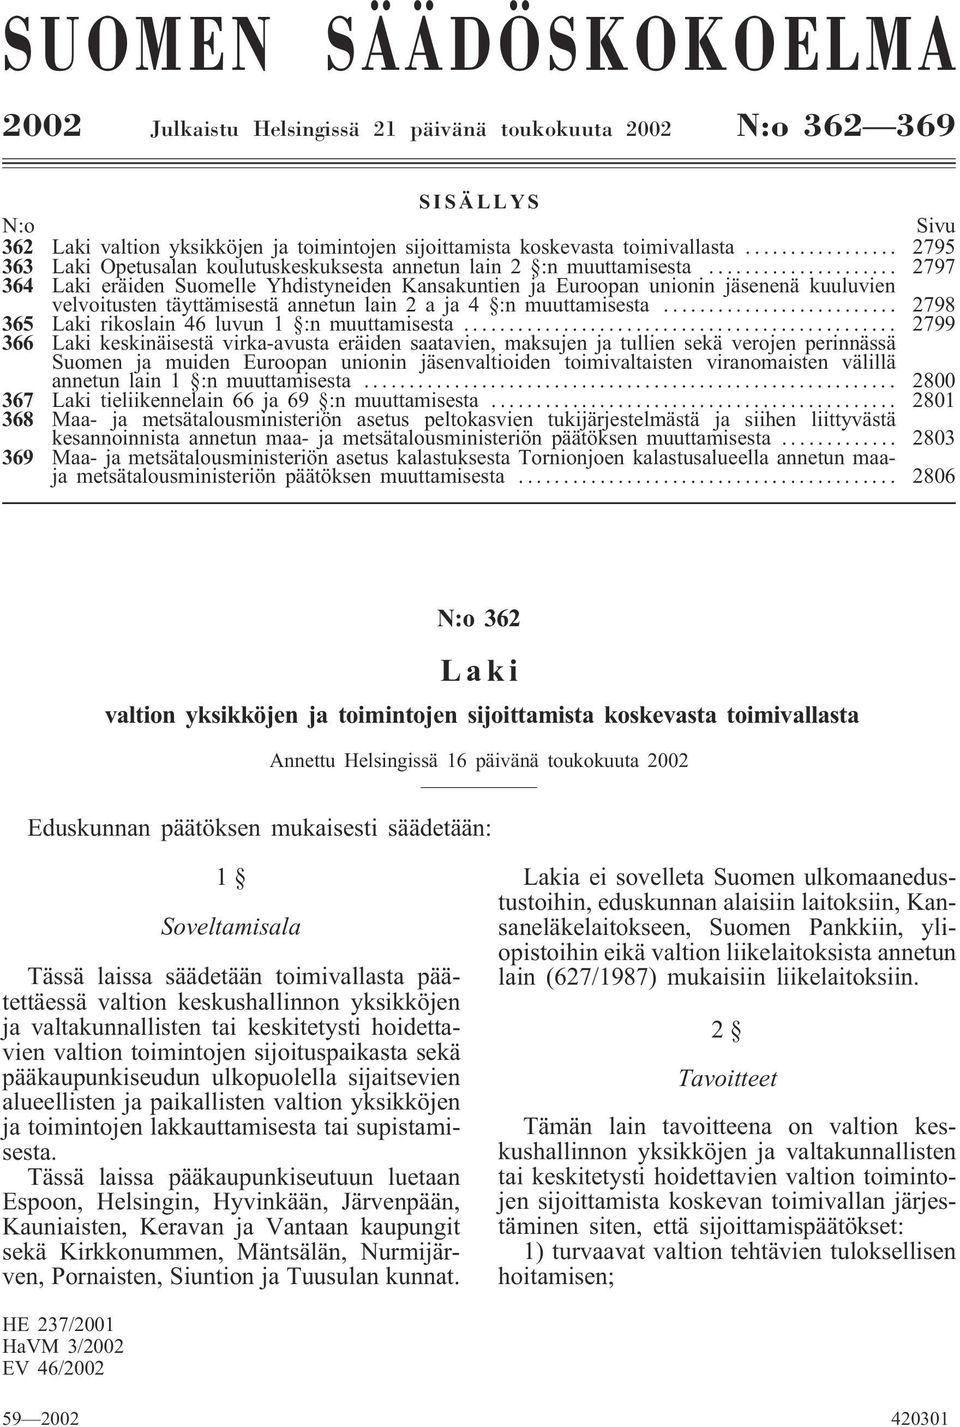 .. 2797 364 Laki eräiden Suomelle Yhdistyneiden Kansakuntien ja Euroopan unionin jäsenenä kuuluvien velvoitusten täyttämisestä annetun lain 2aja4 :nmuuttamisesta.